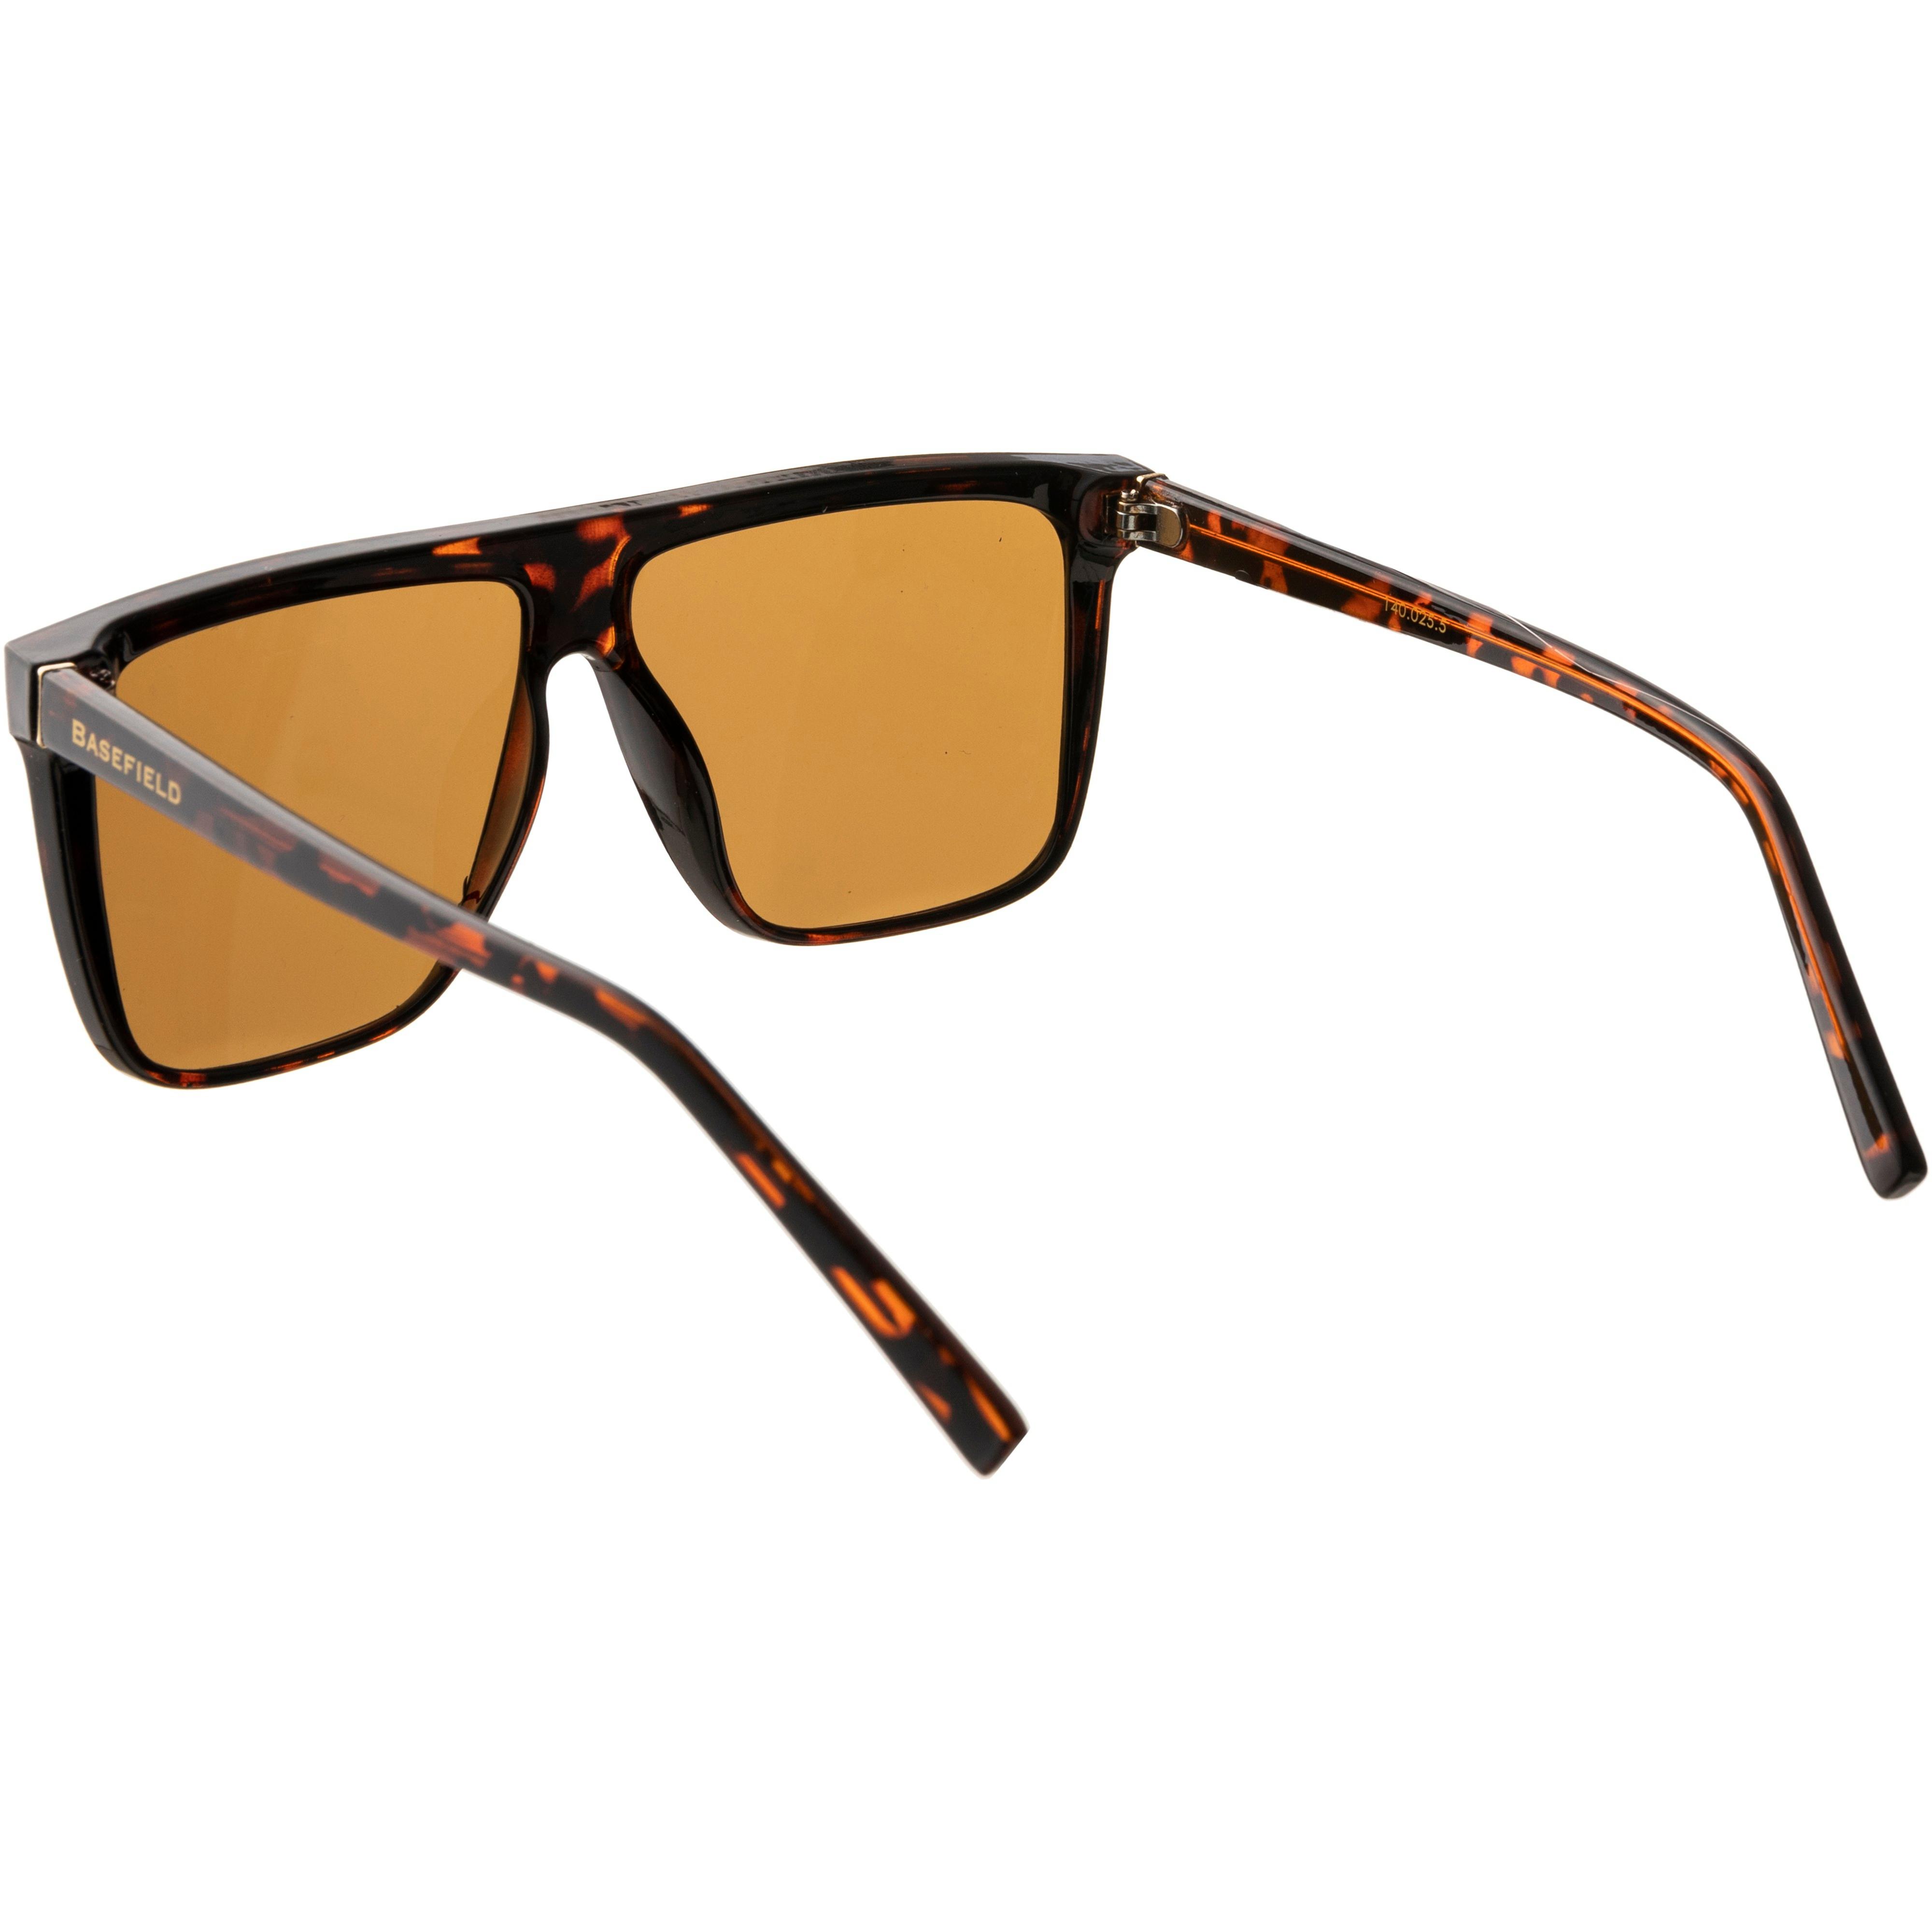 demy von brown im - Online Basefield Shop SportScheck shiny brown Sonnenbrille solid kaufen